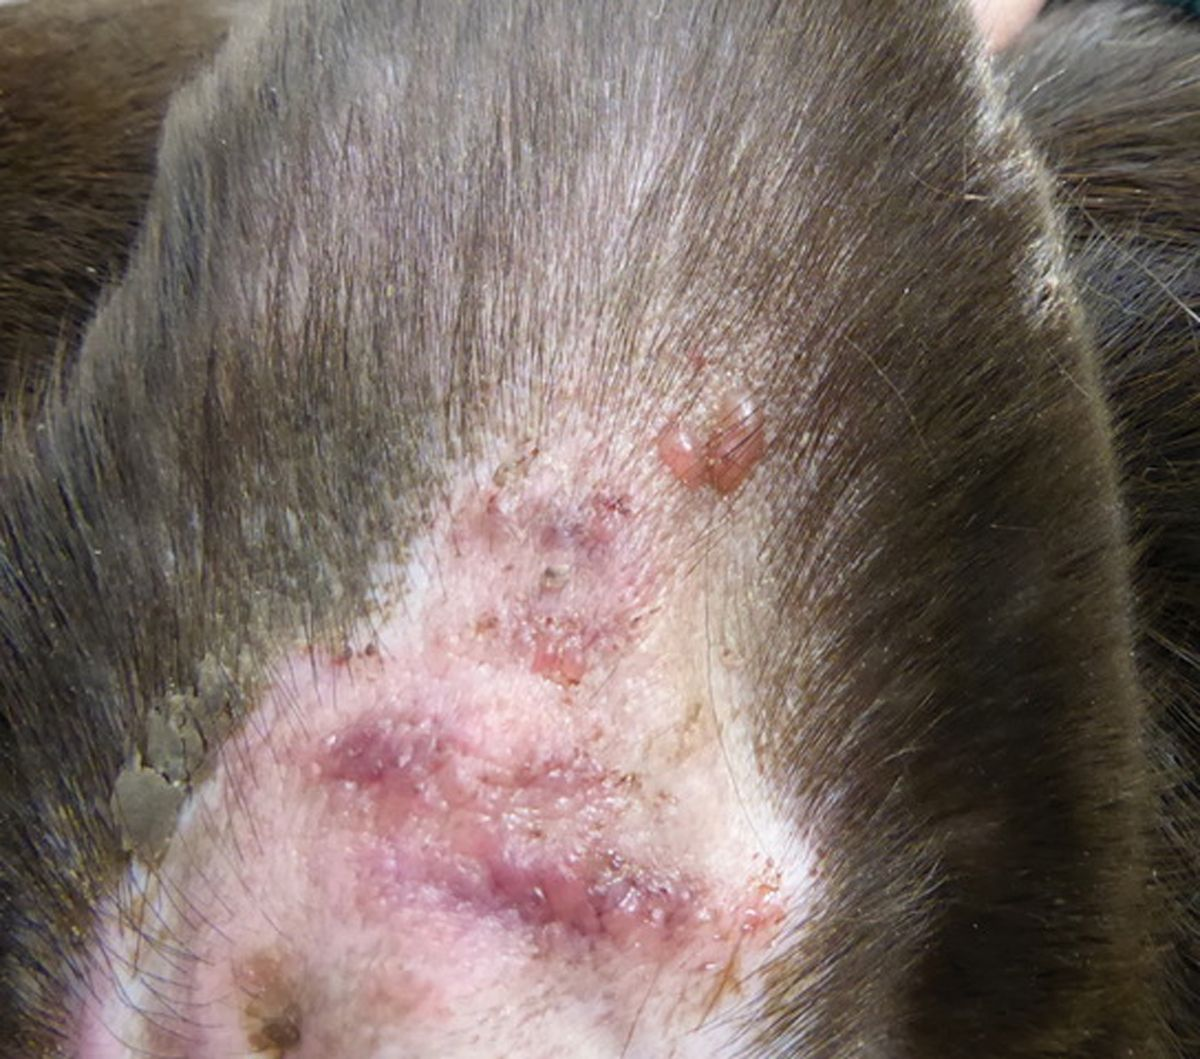  In caso di vasculite sono spesso colpite le pinne auricolari. Questo cane con vasculite neutrofila mostrava la presenza di vescicole sull’aspetto concavo delle orecchie.